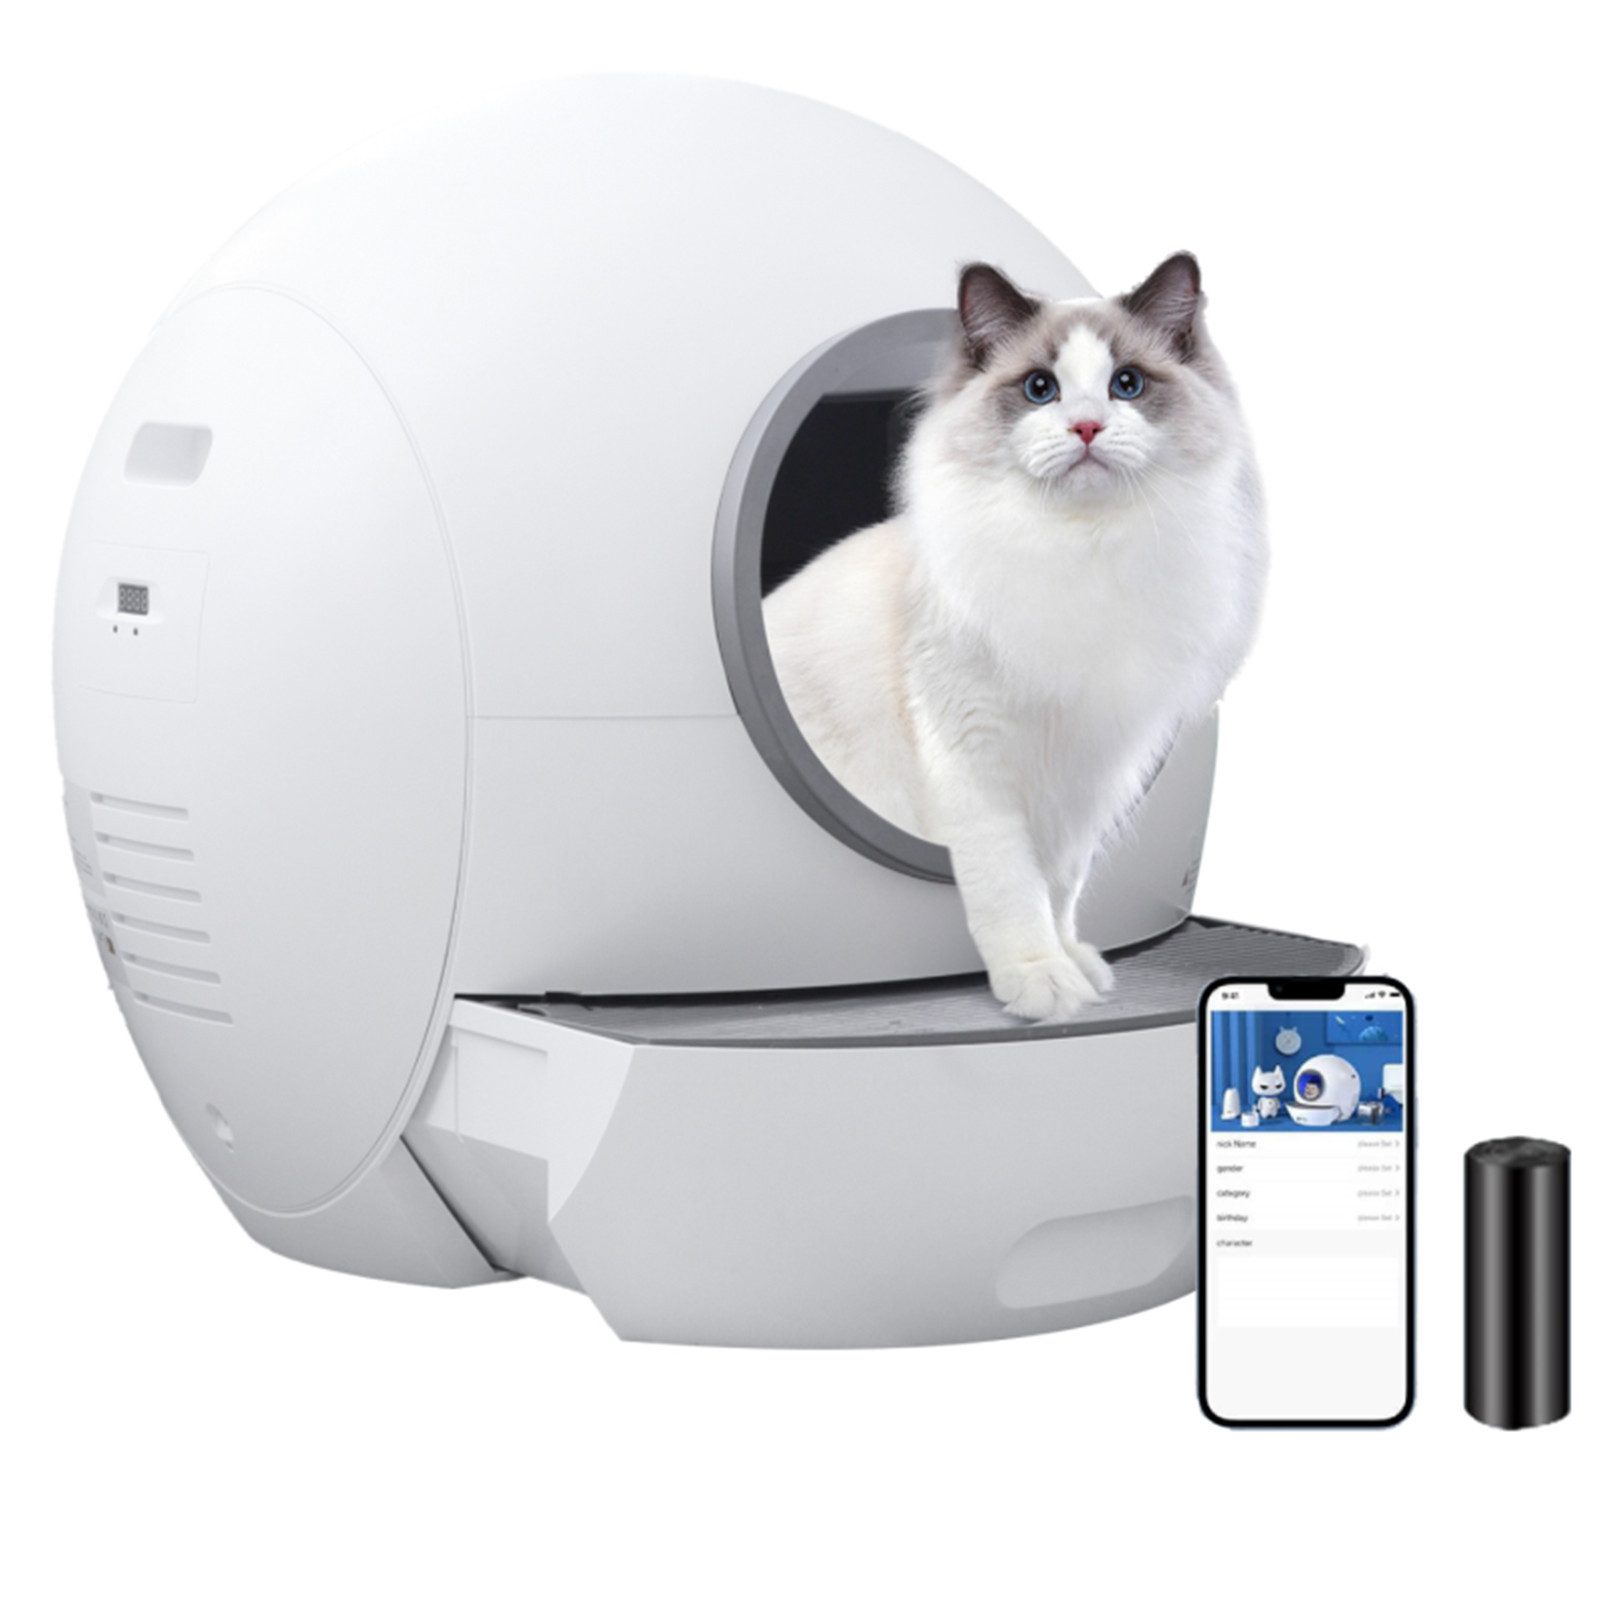 AmiCura Katzentoilette Cura 1 WIFI-Version,APP-Steuerung, intelligente Überwachung, sicher/geruchlos, extra große Größe bietet Platz für mehrere Katzen